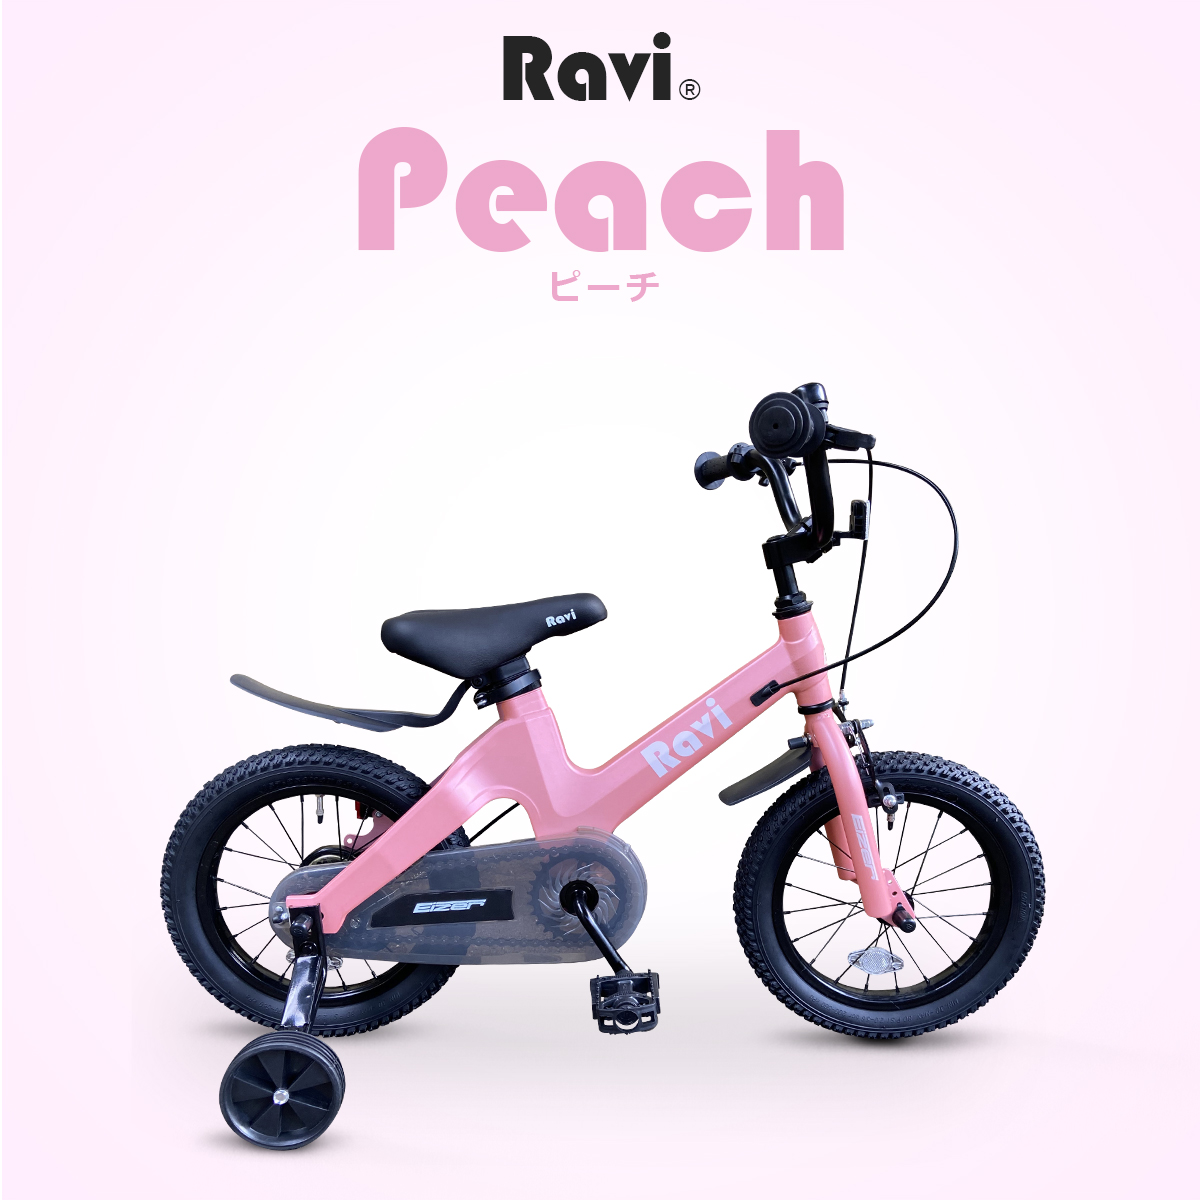 訳あり 格安 子供用 自転車 アウトレット 安い Ravi 14インチ 16インチ 男の子 女の子 補助輪付き 要組立